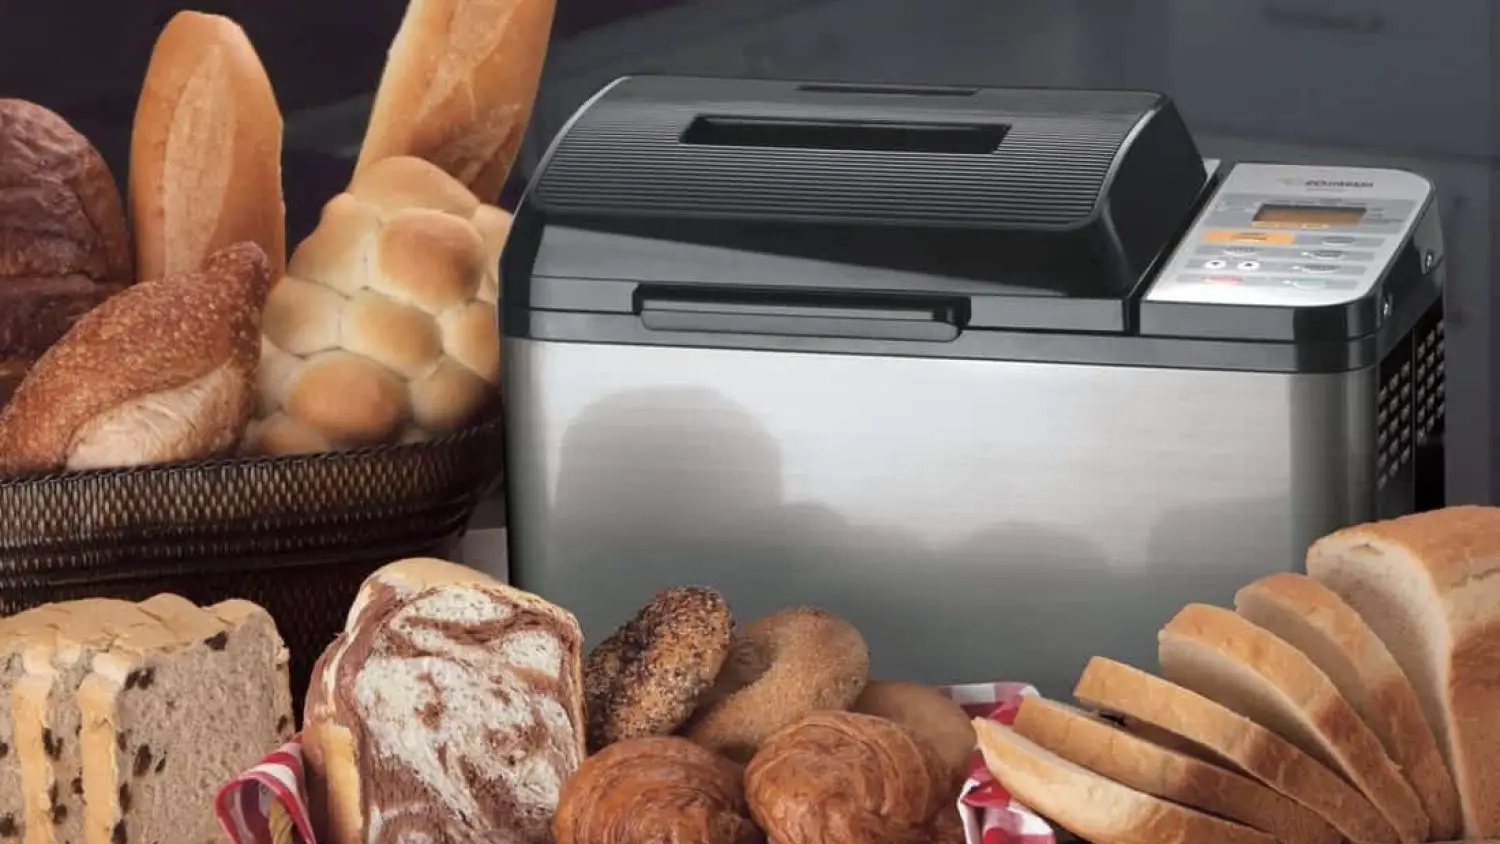 5 Best Bread Maker Models for The Tastiest Homemade Loaves